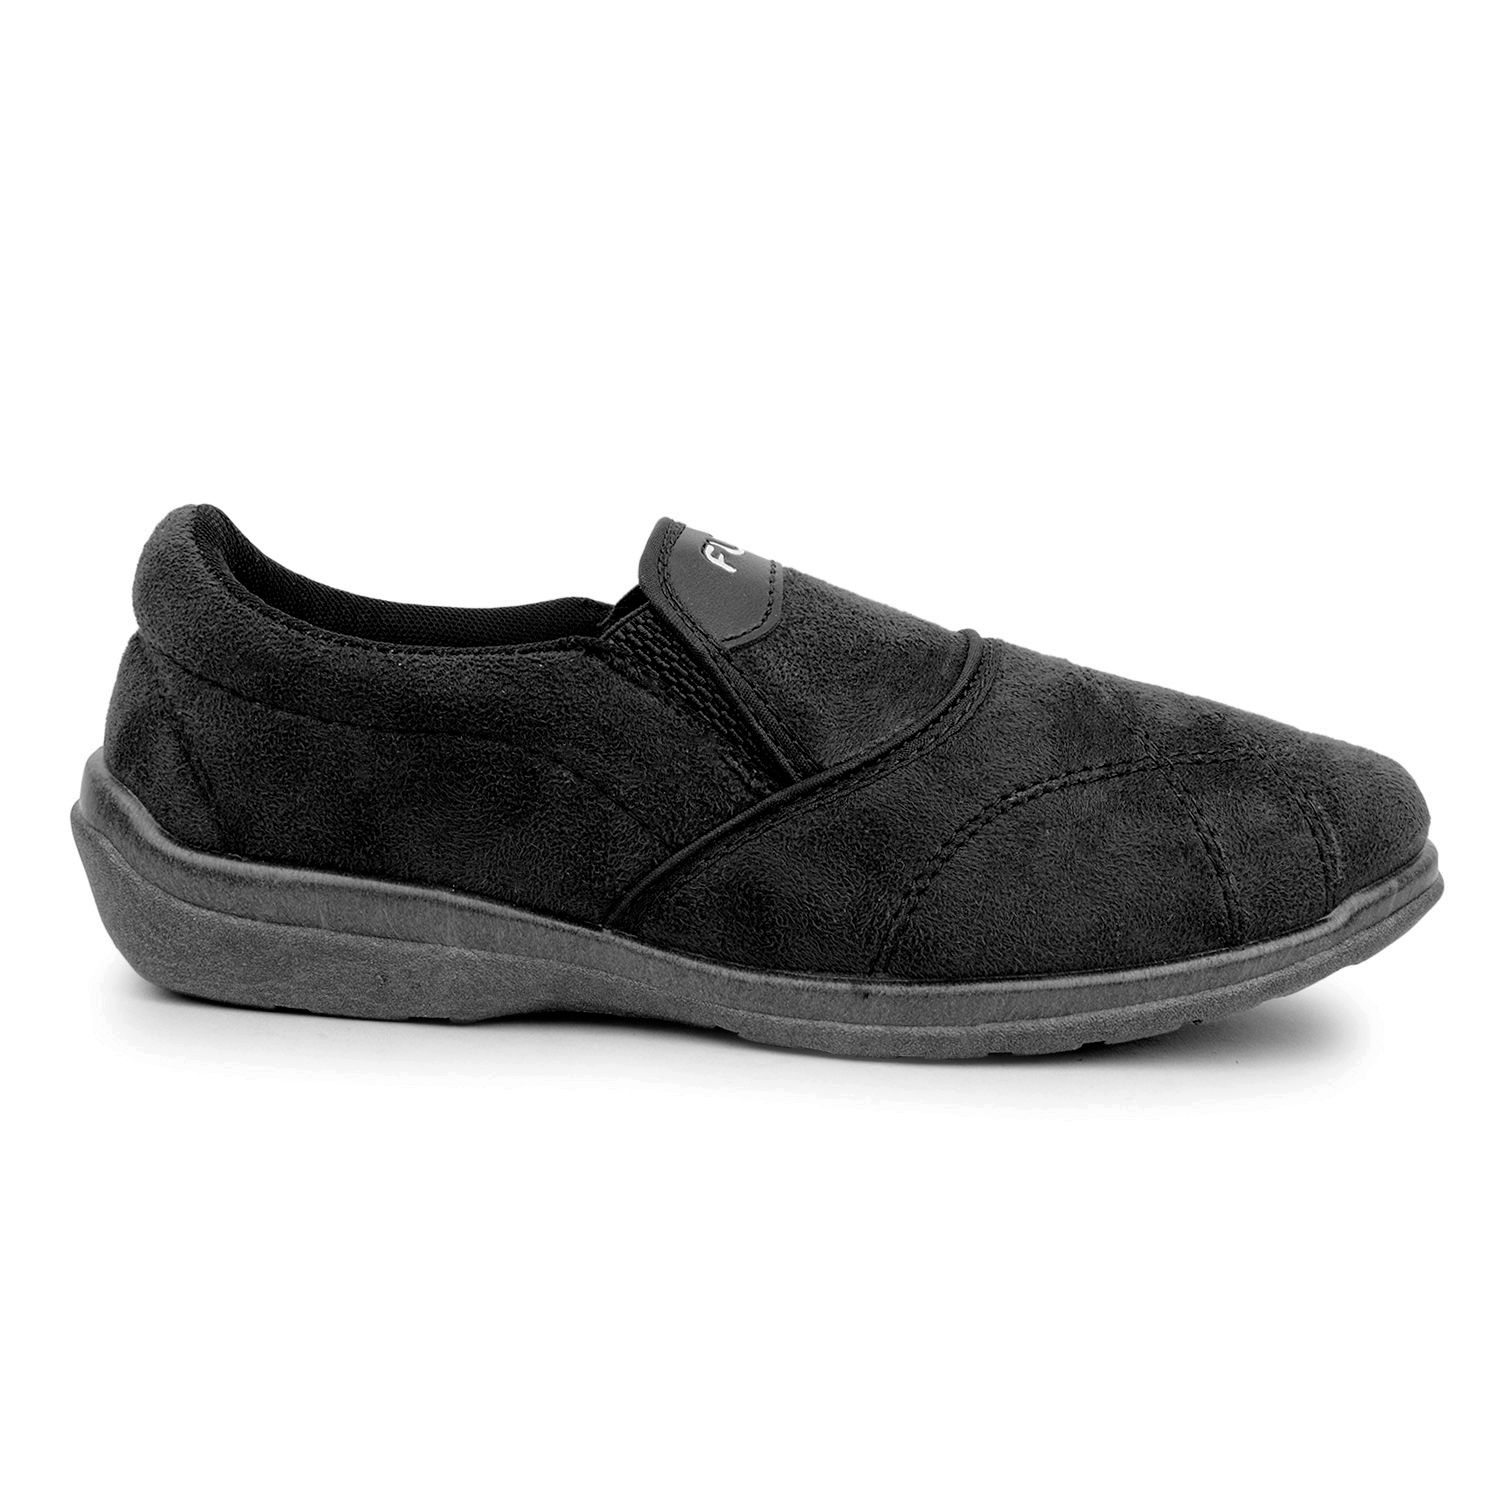 Fuel Men's Boy's Slip On Lifestyle Black Casual Shoes - Buy Fuel Men's ...